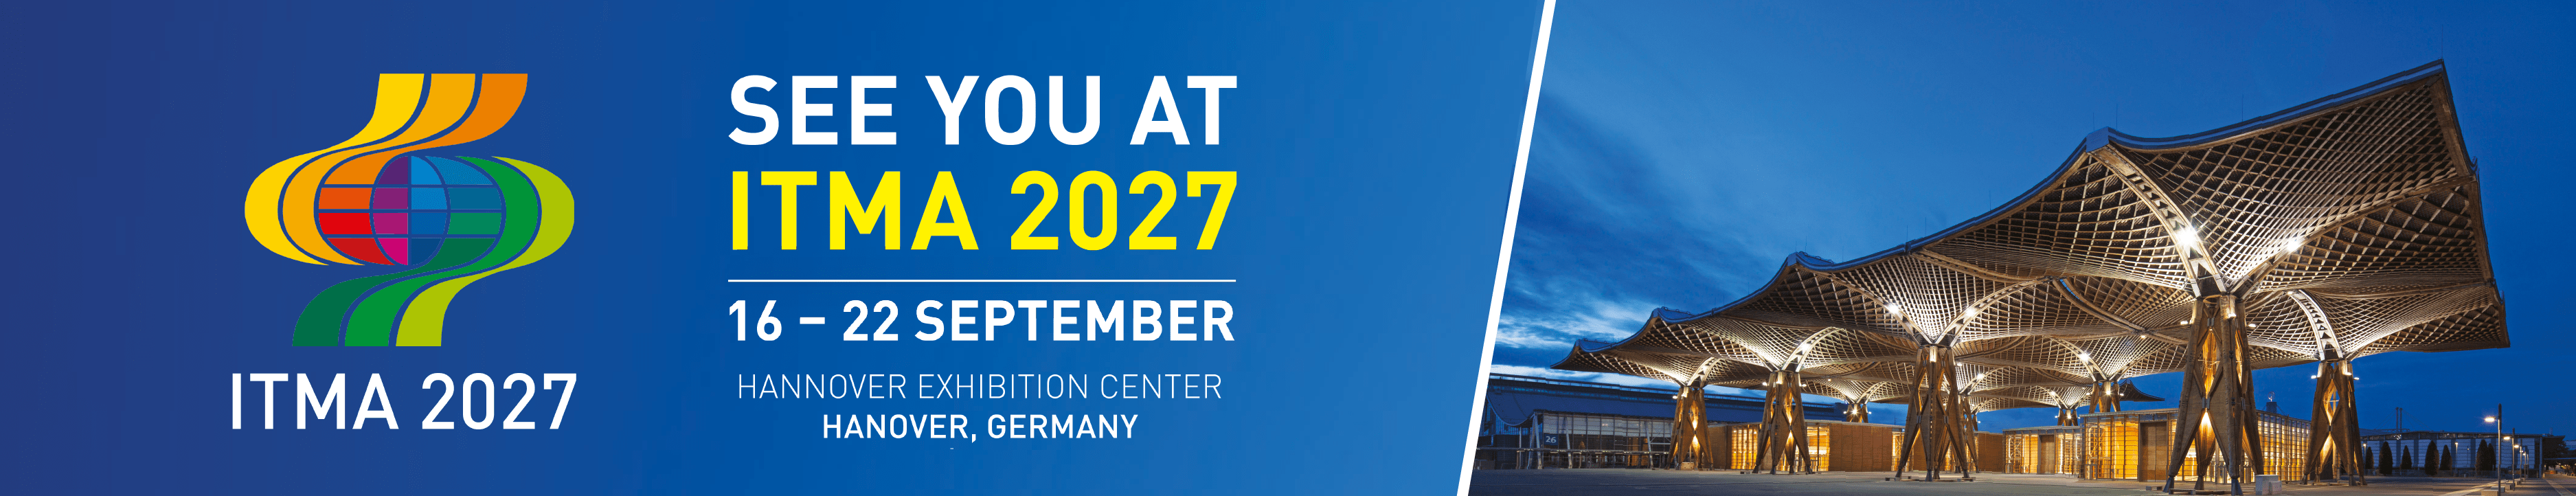 ITMA 2027
SEPTEMBER 16 - 22, 2027 
HANOVER (GERMANY)
REGISTER HERE!